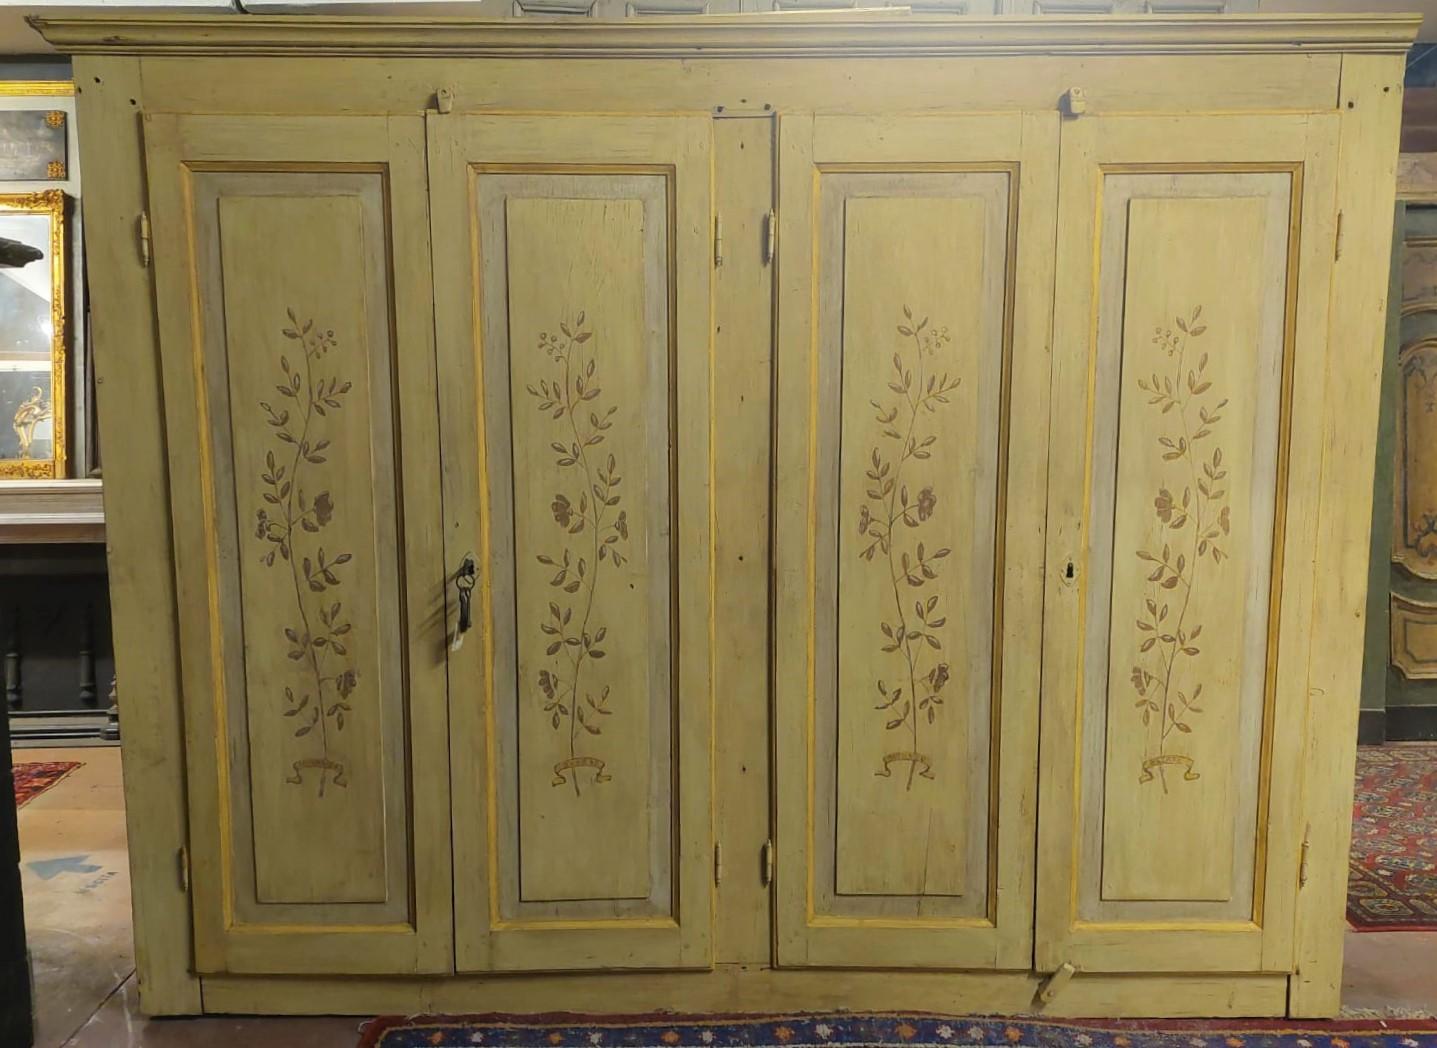 Antike Garderobe Schrank, bestehend aus 4 Türen, in lackiertem Holz und handbemalt mit floralen Motiven, in Italien im 18. Jahrhundert gebaut, maximale Abmessungen cm B 262 x H 208 x T 60, ideal für Schlafzimmer, sowohl privat als auch Hotel, hat